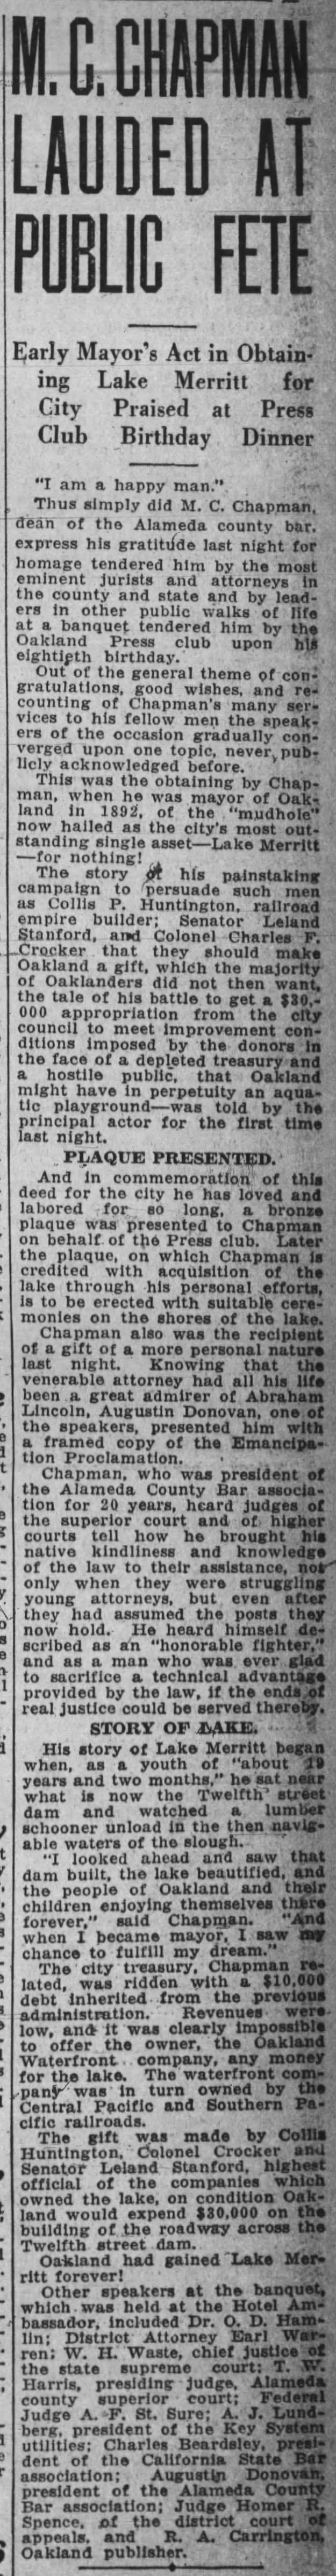 M.C. Chapman Lauded at Public Fete